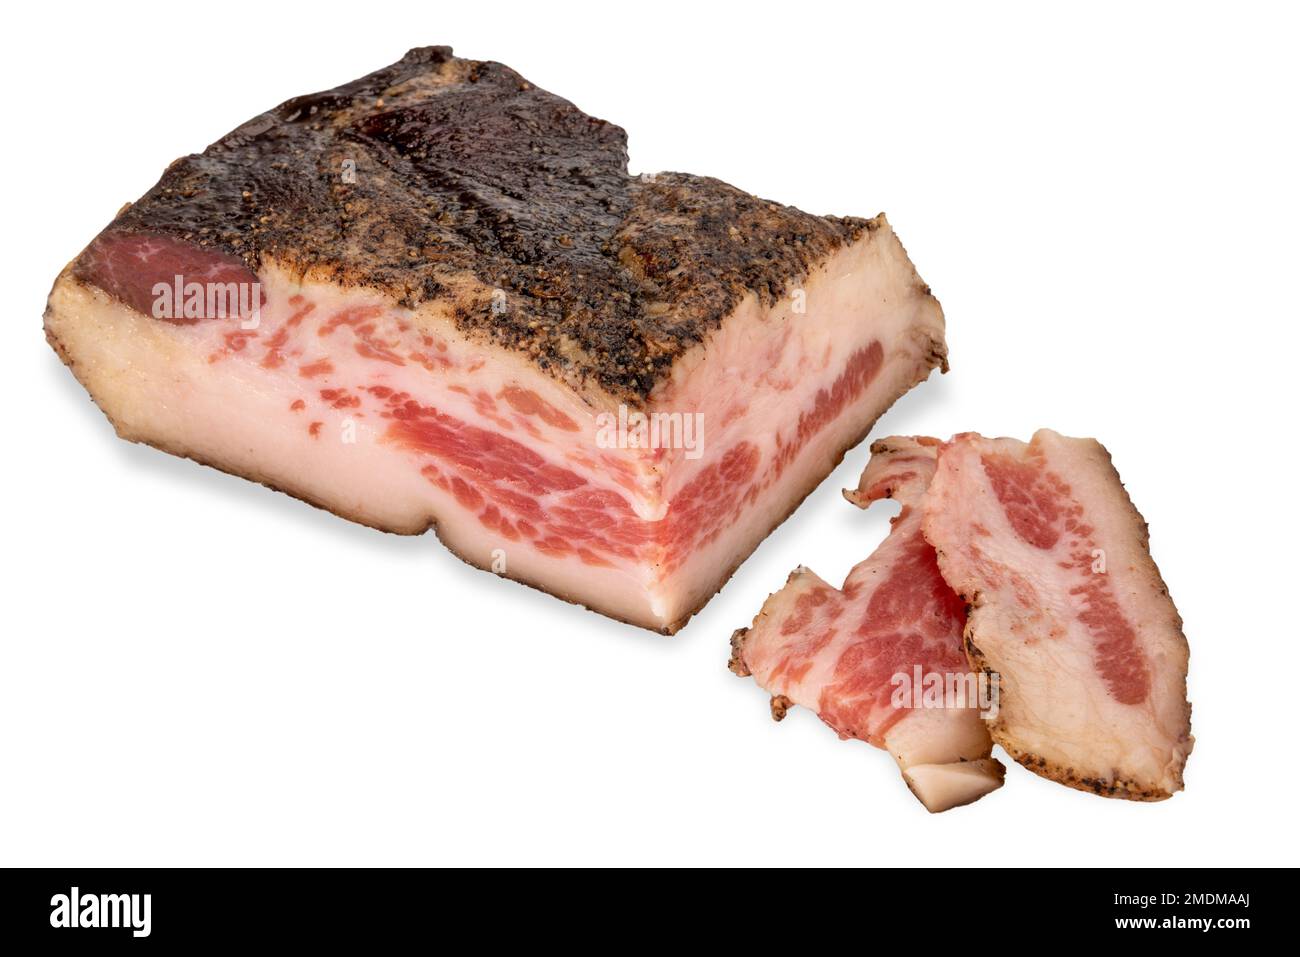 Guanciale Schweinebacken isoliert auf weiß, ist es ein gepökeltes Fleisch, das mit einem Stück Schweinebacken zubereitet wird. Inhaltsstoff für Pasta amatriciana und Carbonara - CLI Stockfoto